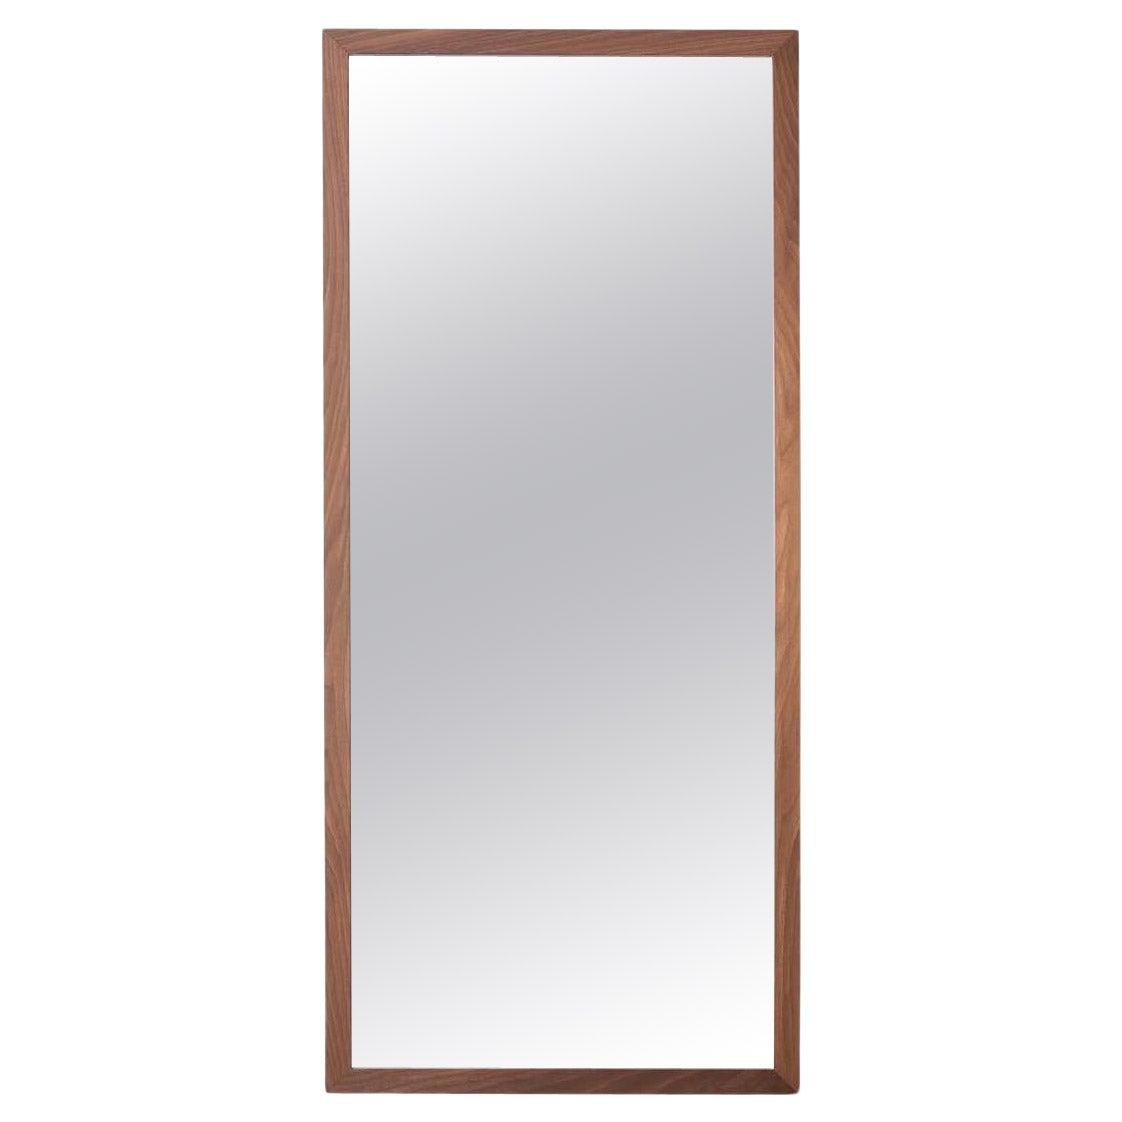 Specchio Rettangolare 2018, miroir rectangulaire